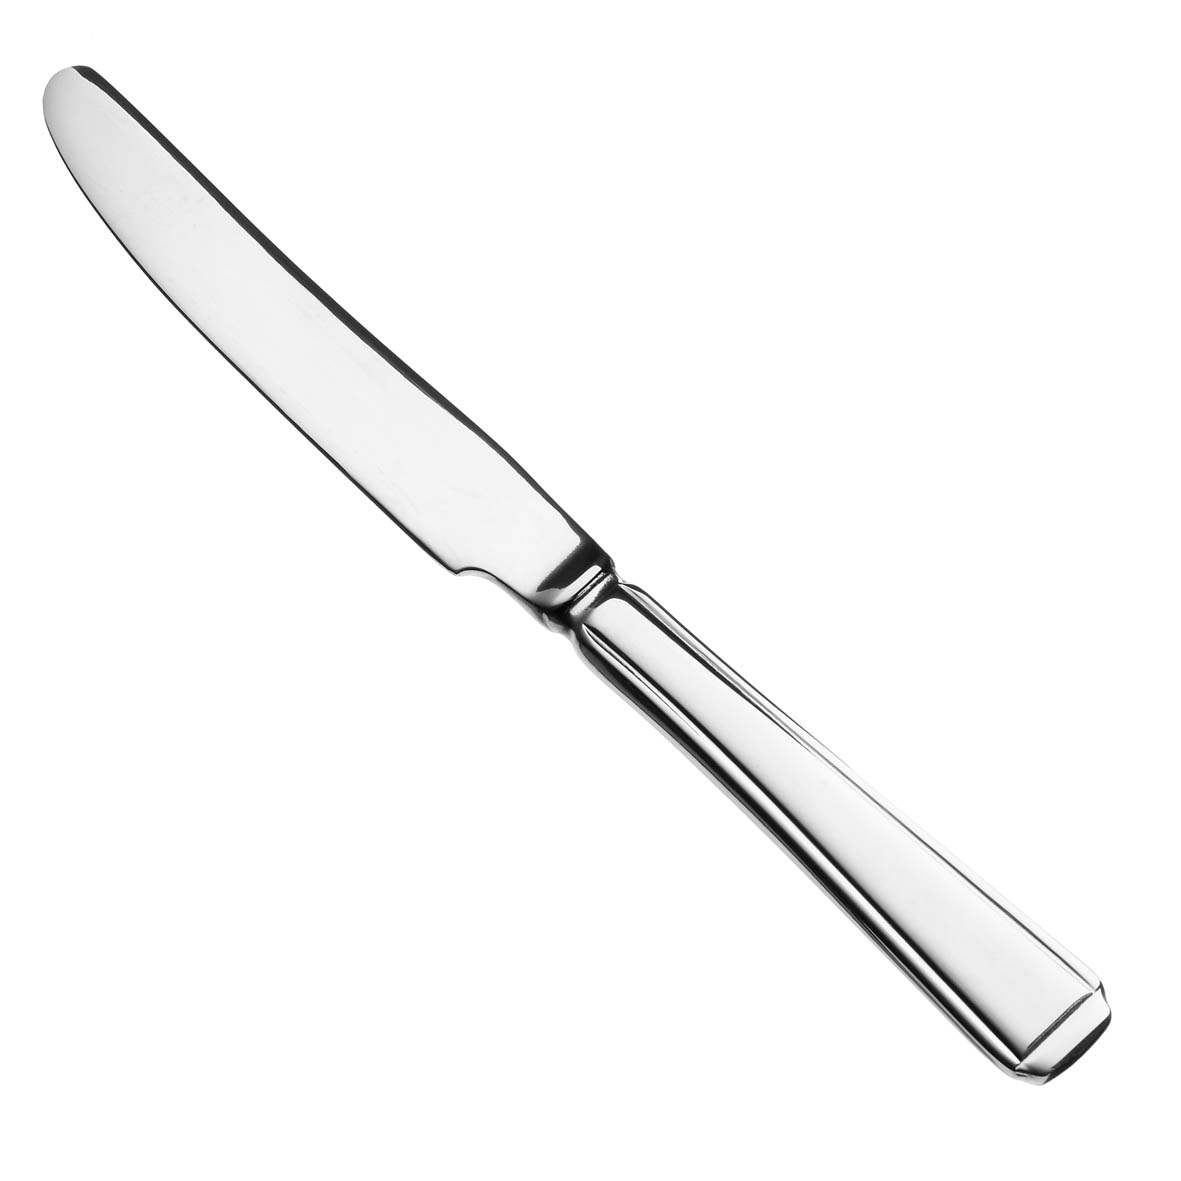 Knife Clip Art At Clker Com V